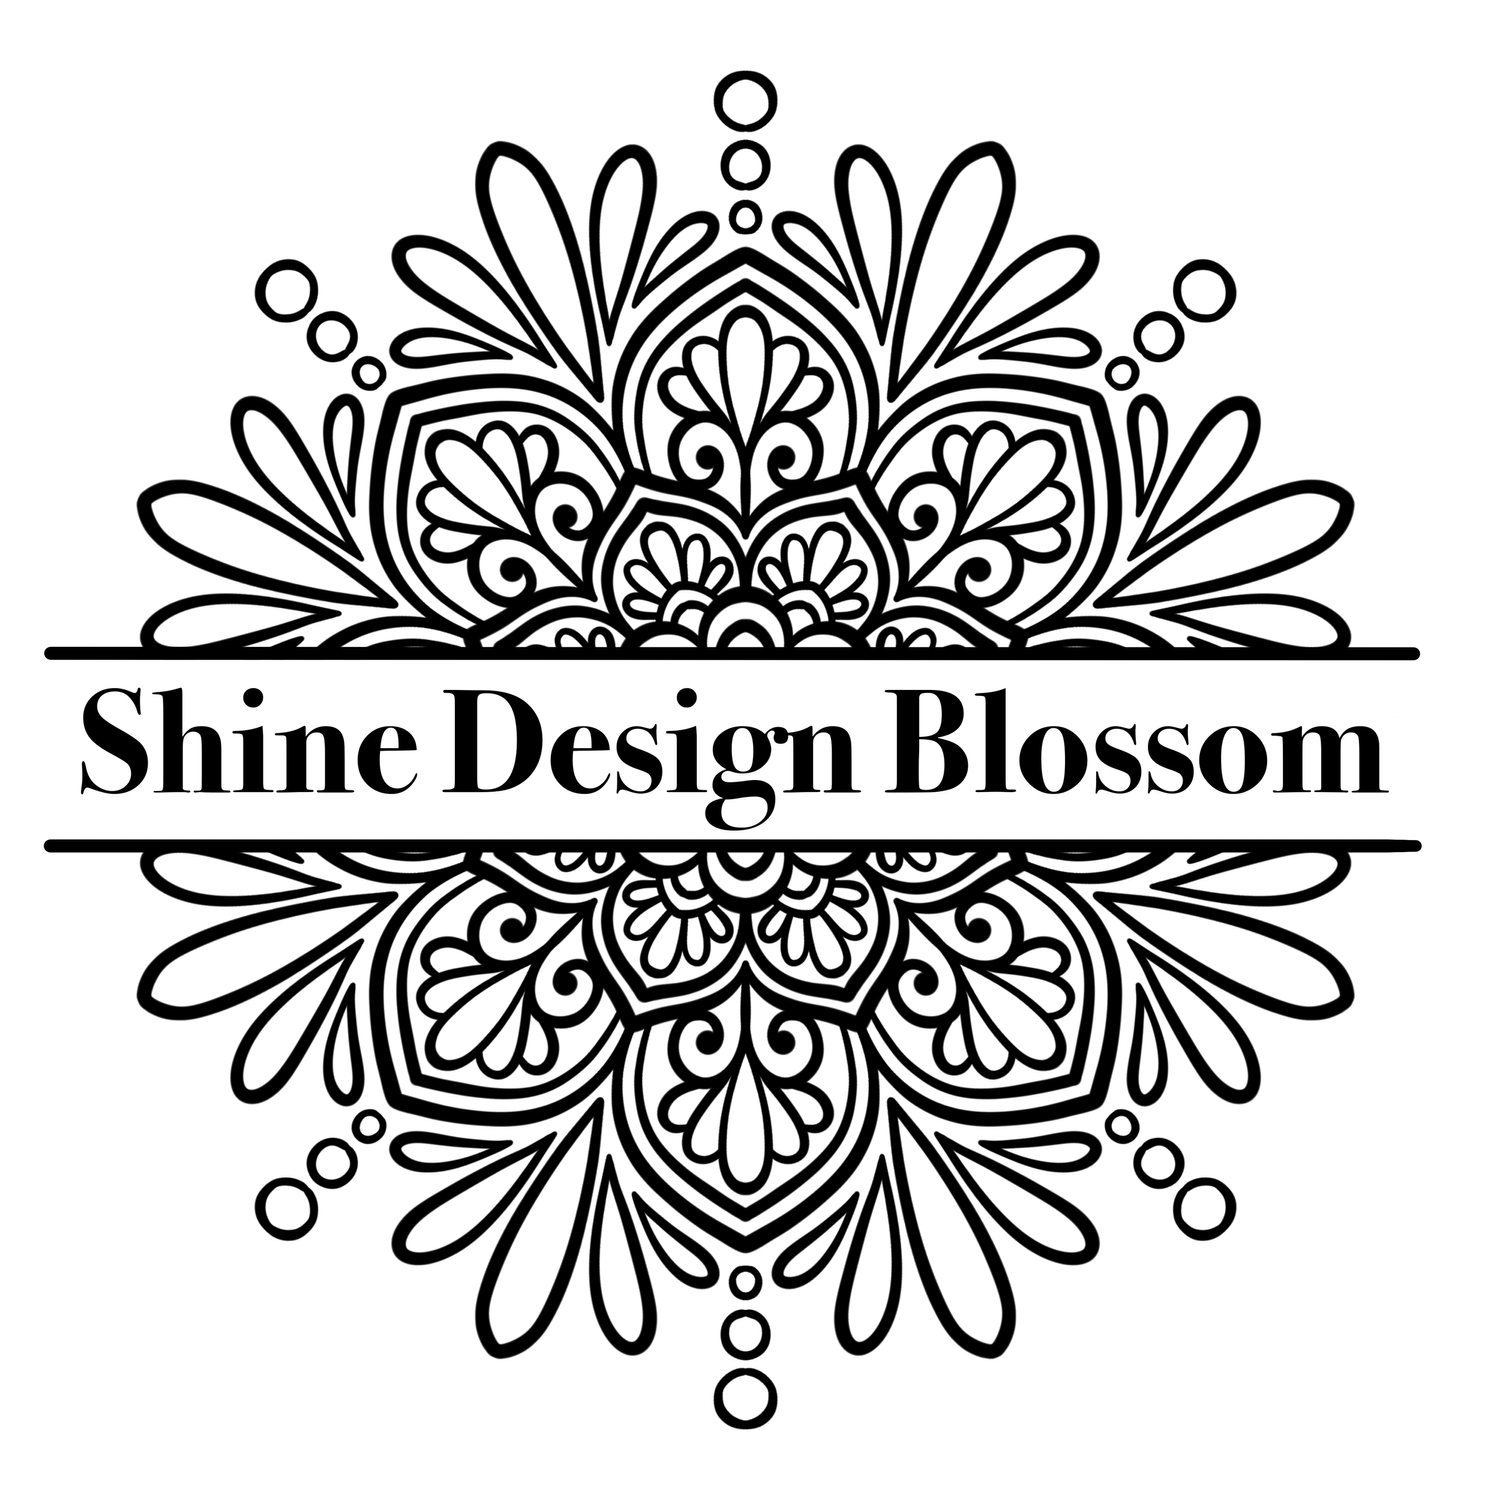 Shine Design Blossom